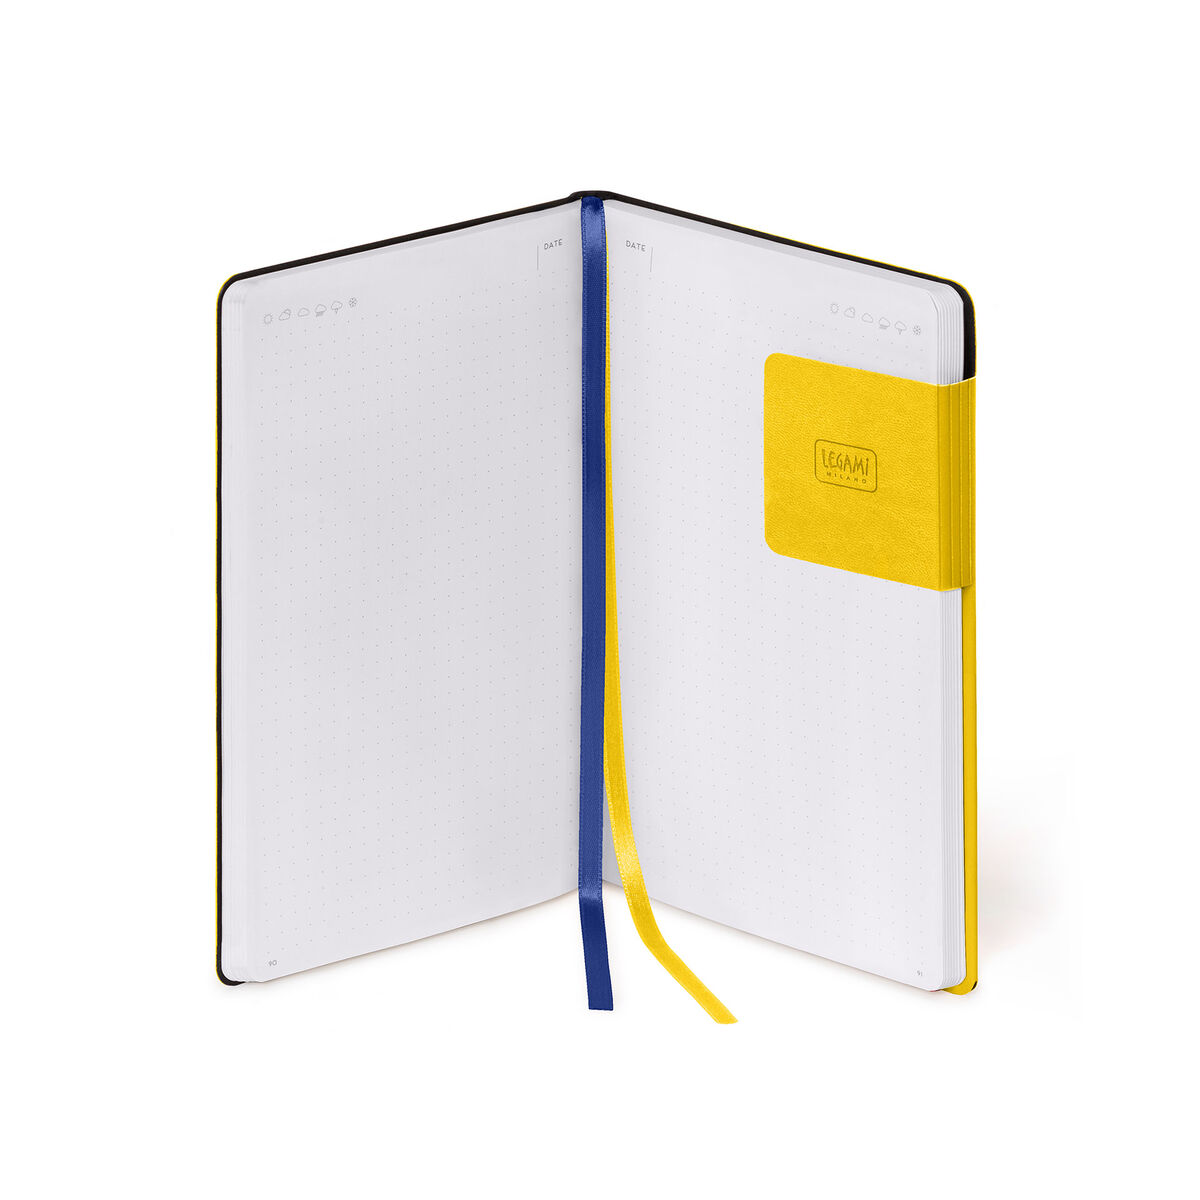 Cuaderno de Puntos - Medium - My Notebook, , zoo